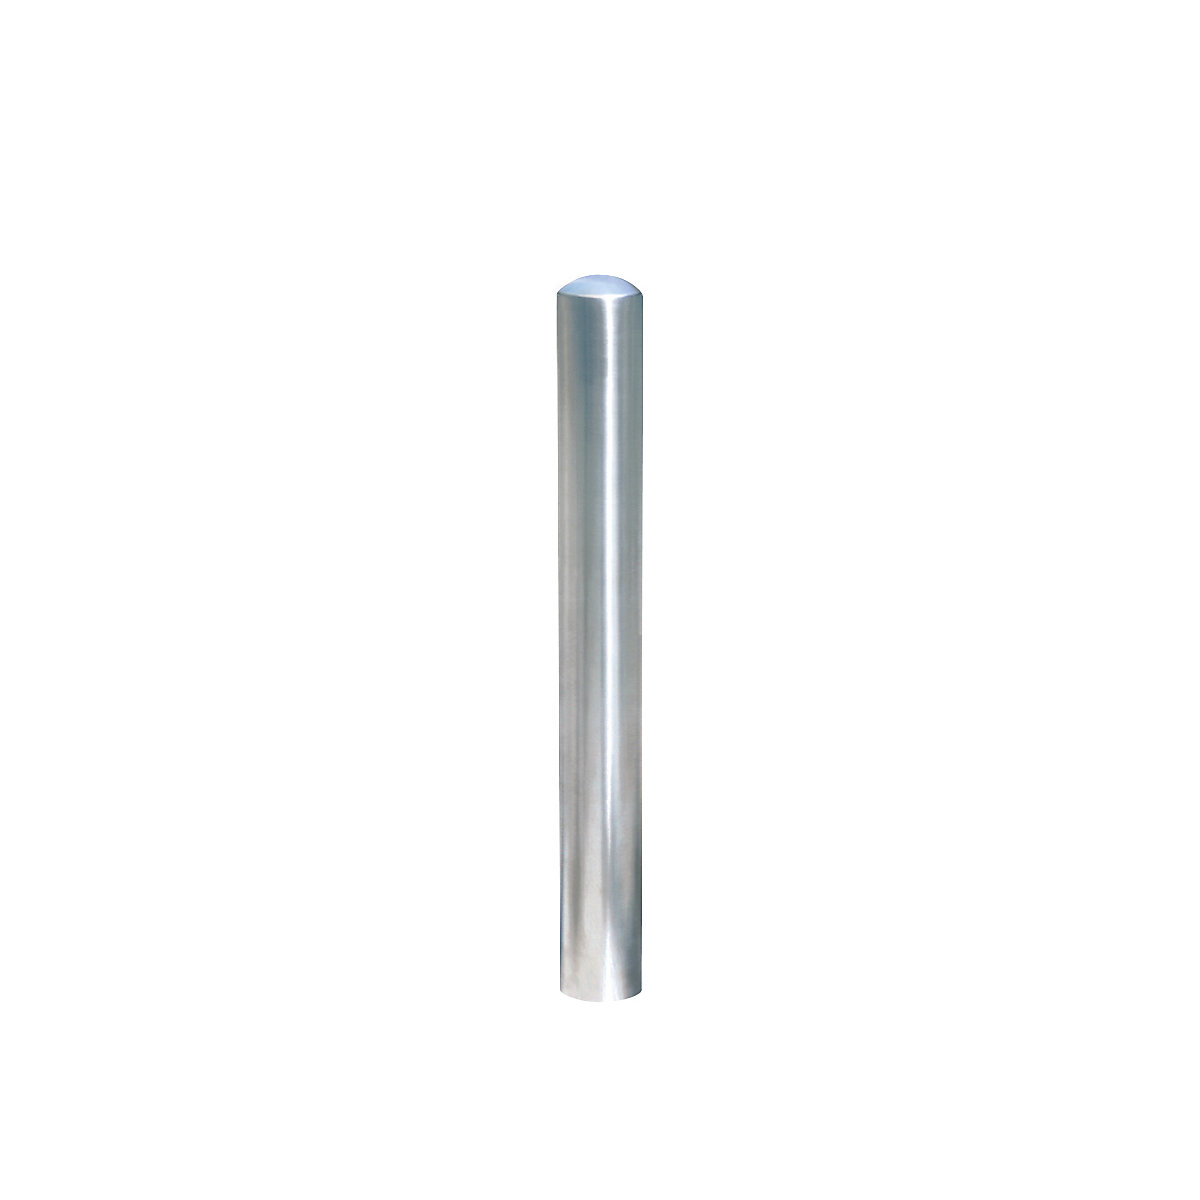 Paracarro di acciaio inox, estraibile, con serratura a base triangolare, Ø 108 mm-4